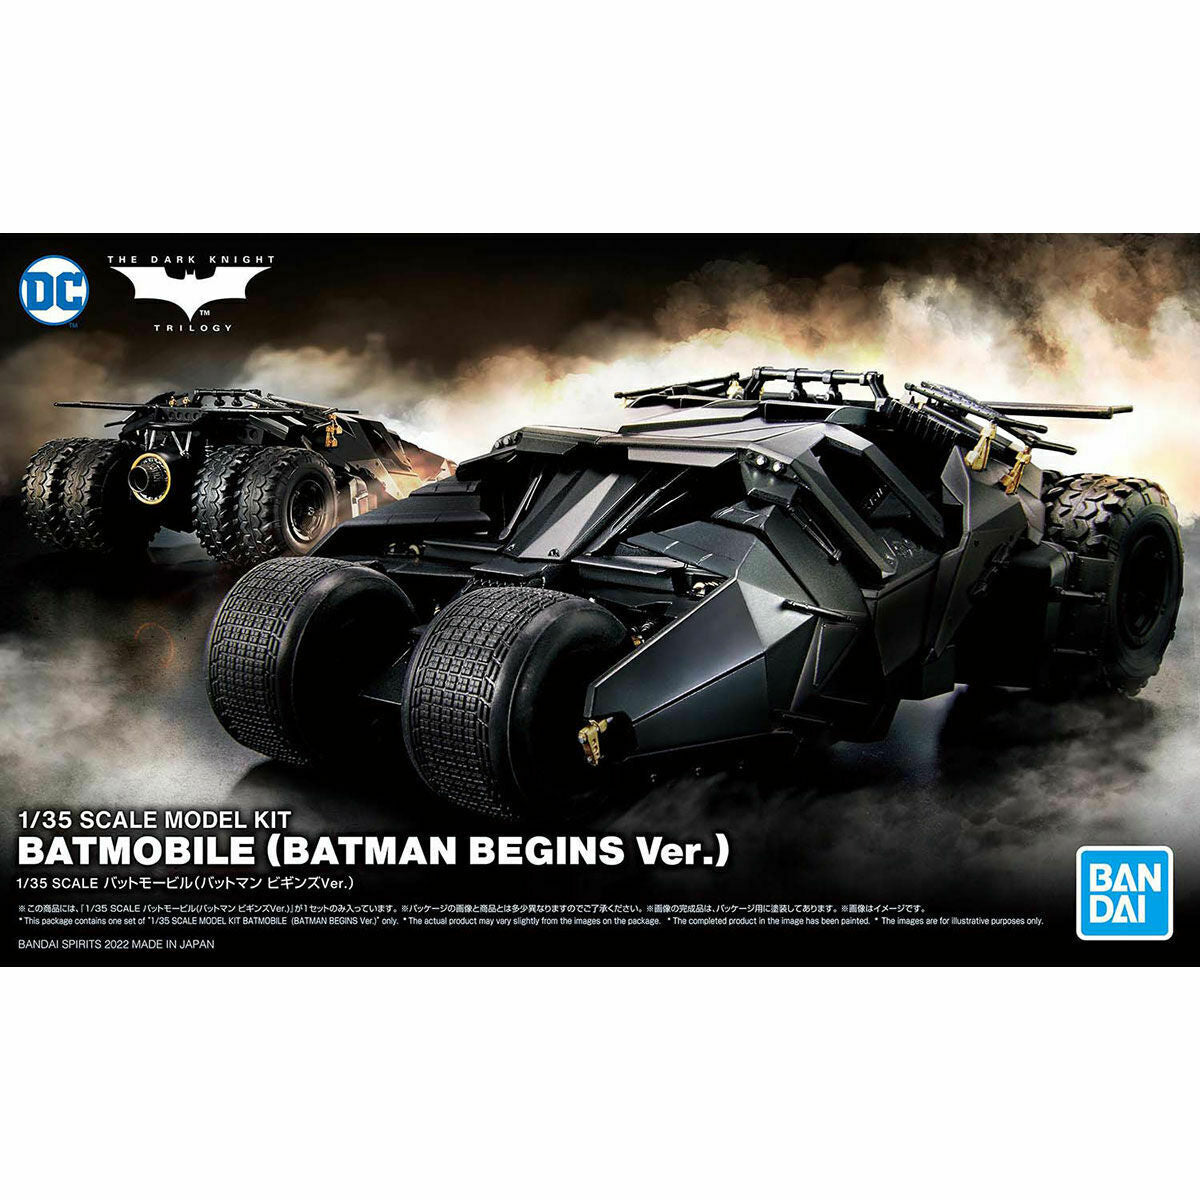 BANDAI 5062184 Batmobile (Batman Begins Ver.) "BATMAN", Bandai Spirits 1/35 Scale Model Kit